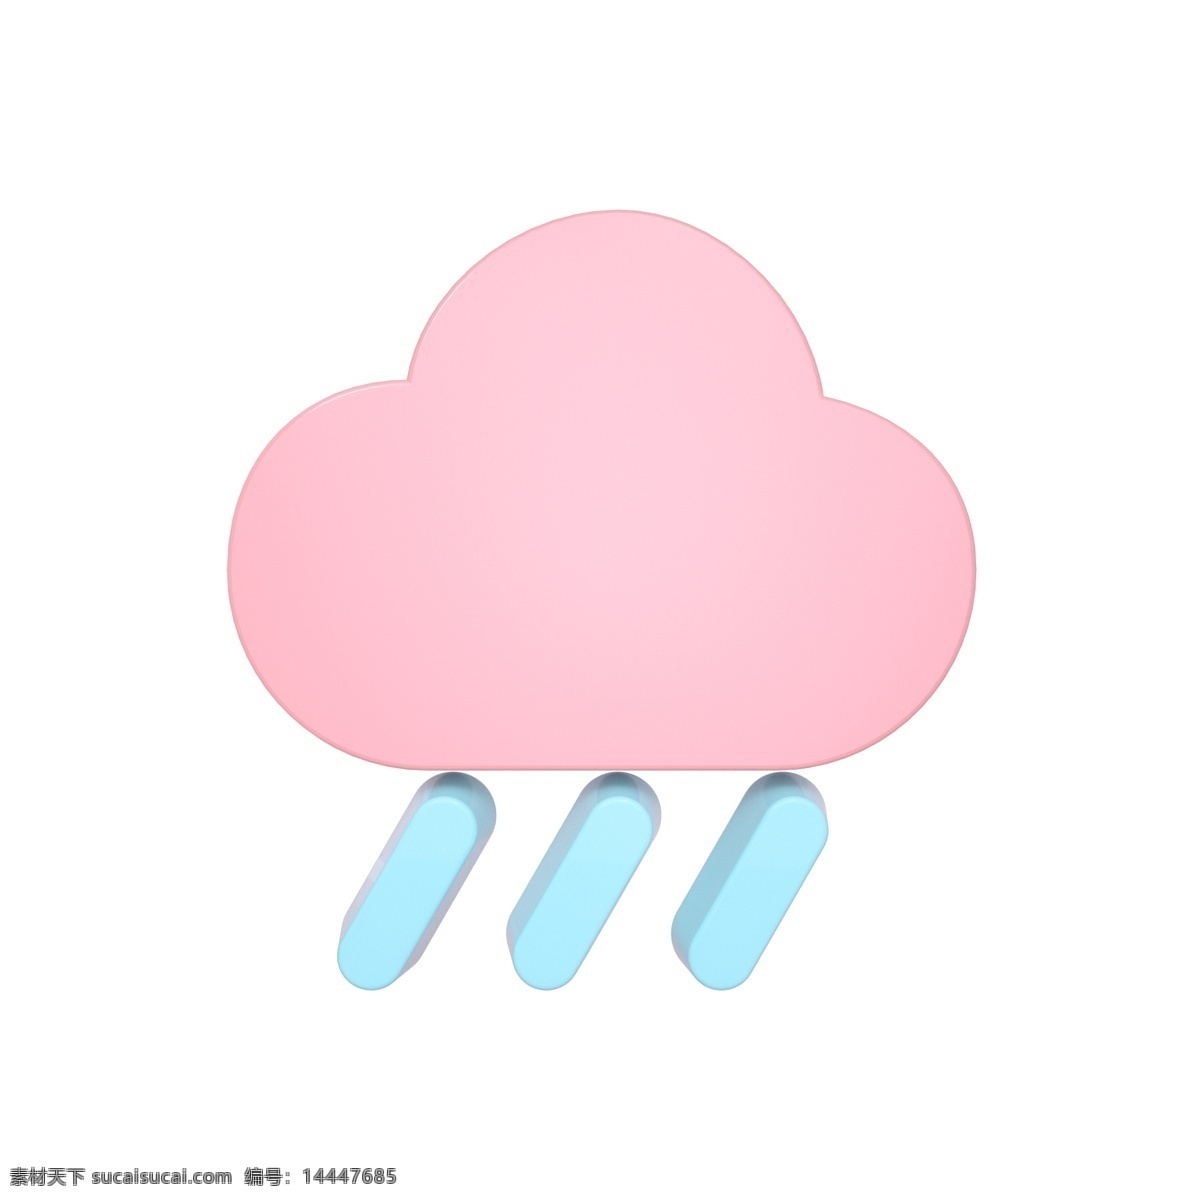 柔 色 天气 类 立体 图标 大雨 c4d 3d 柔色 粉色 青色 天气类图标 通用图标装饰 可爱 常用